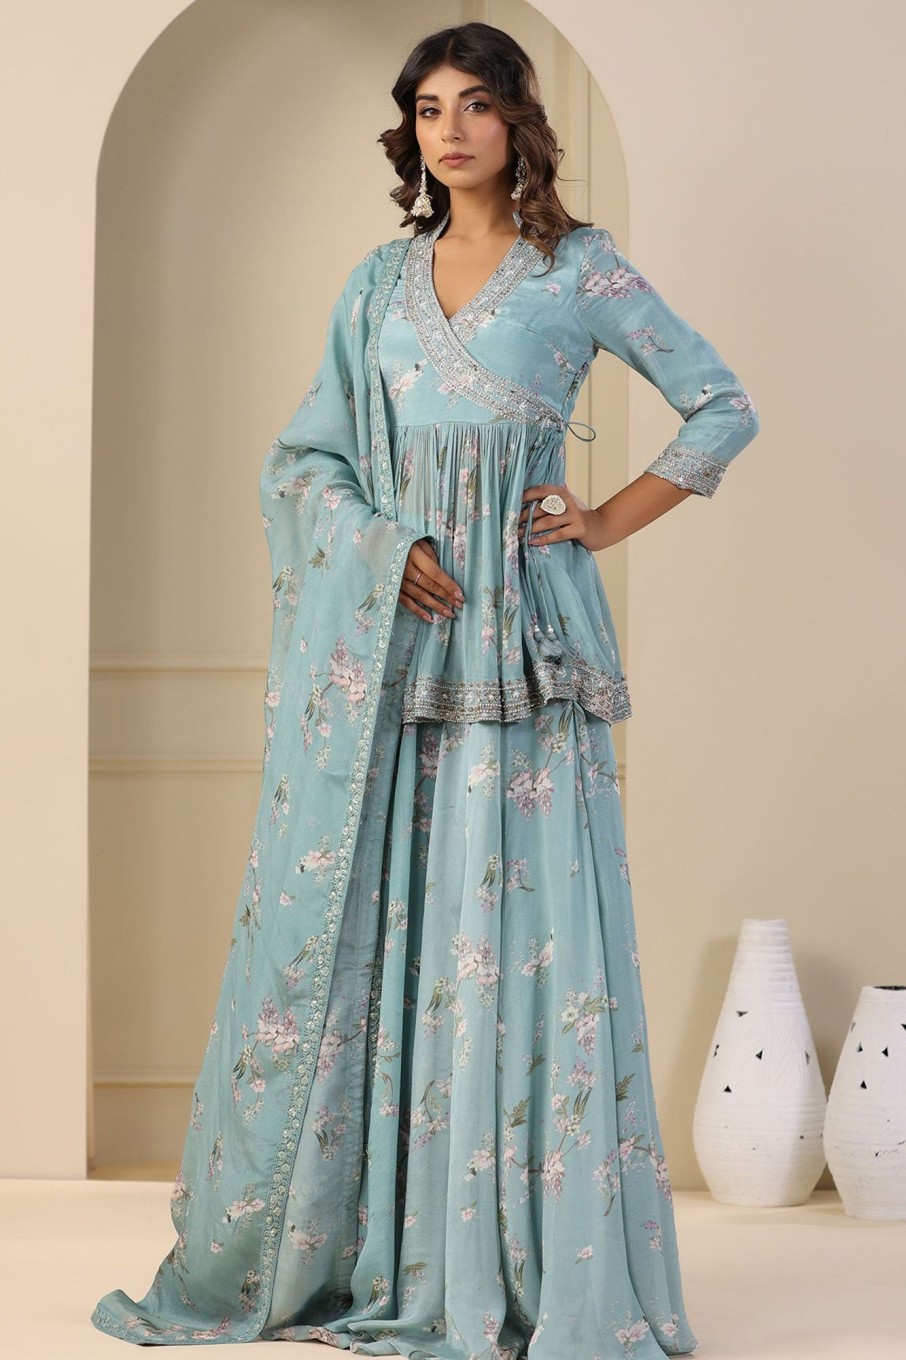 Share 197+ meena bazaar cotton suits best